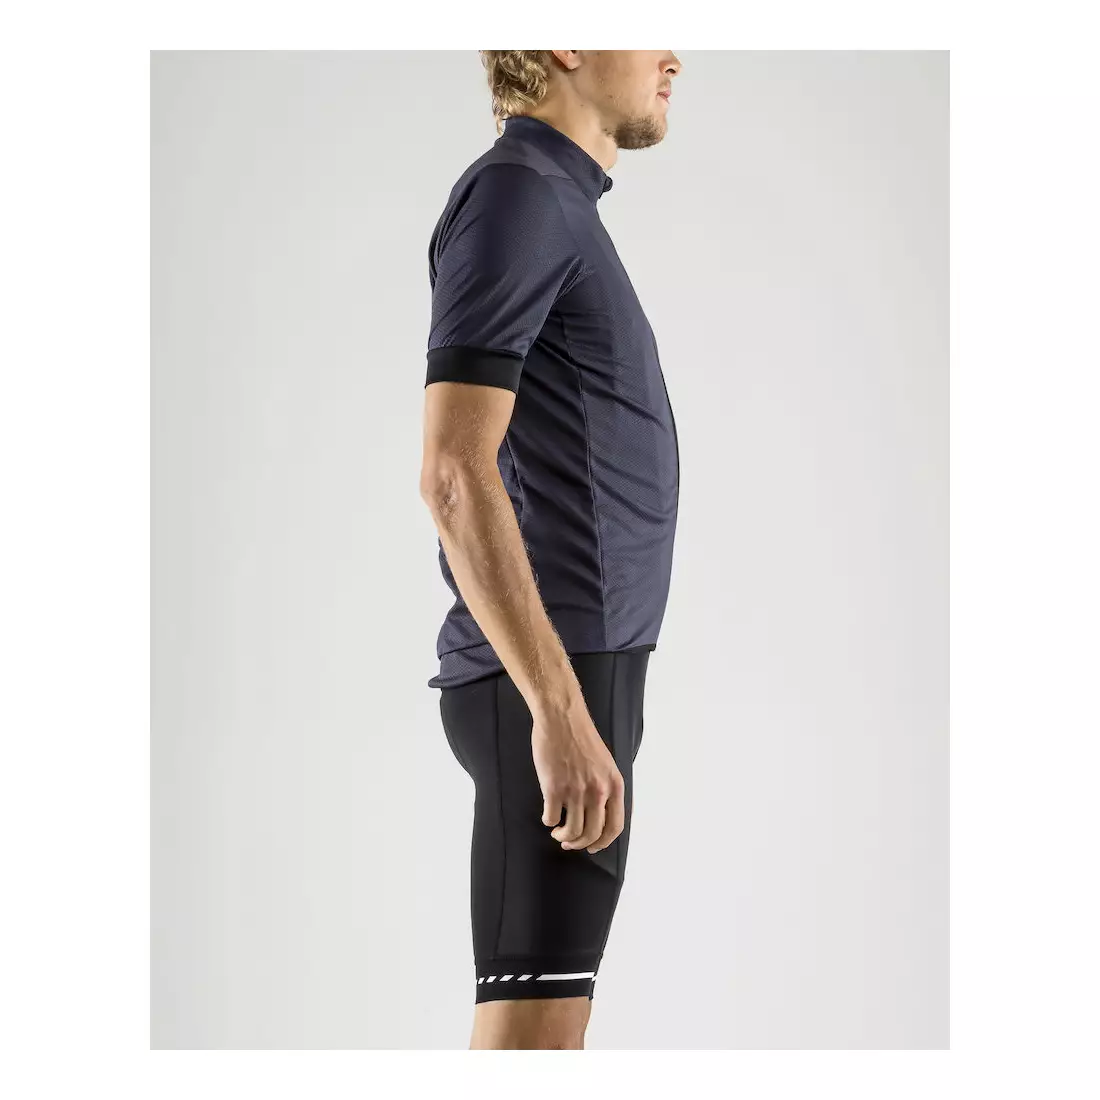 Tricou de ciclism pentru bărbați CRAFT RISE bleumarin 1906097-947575